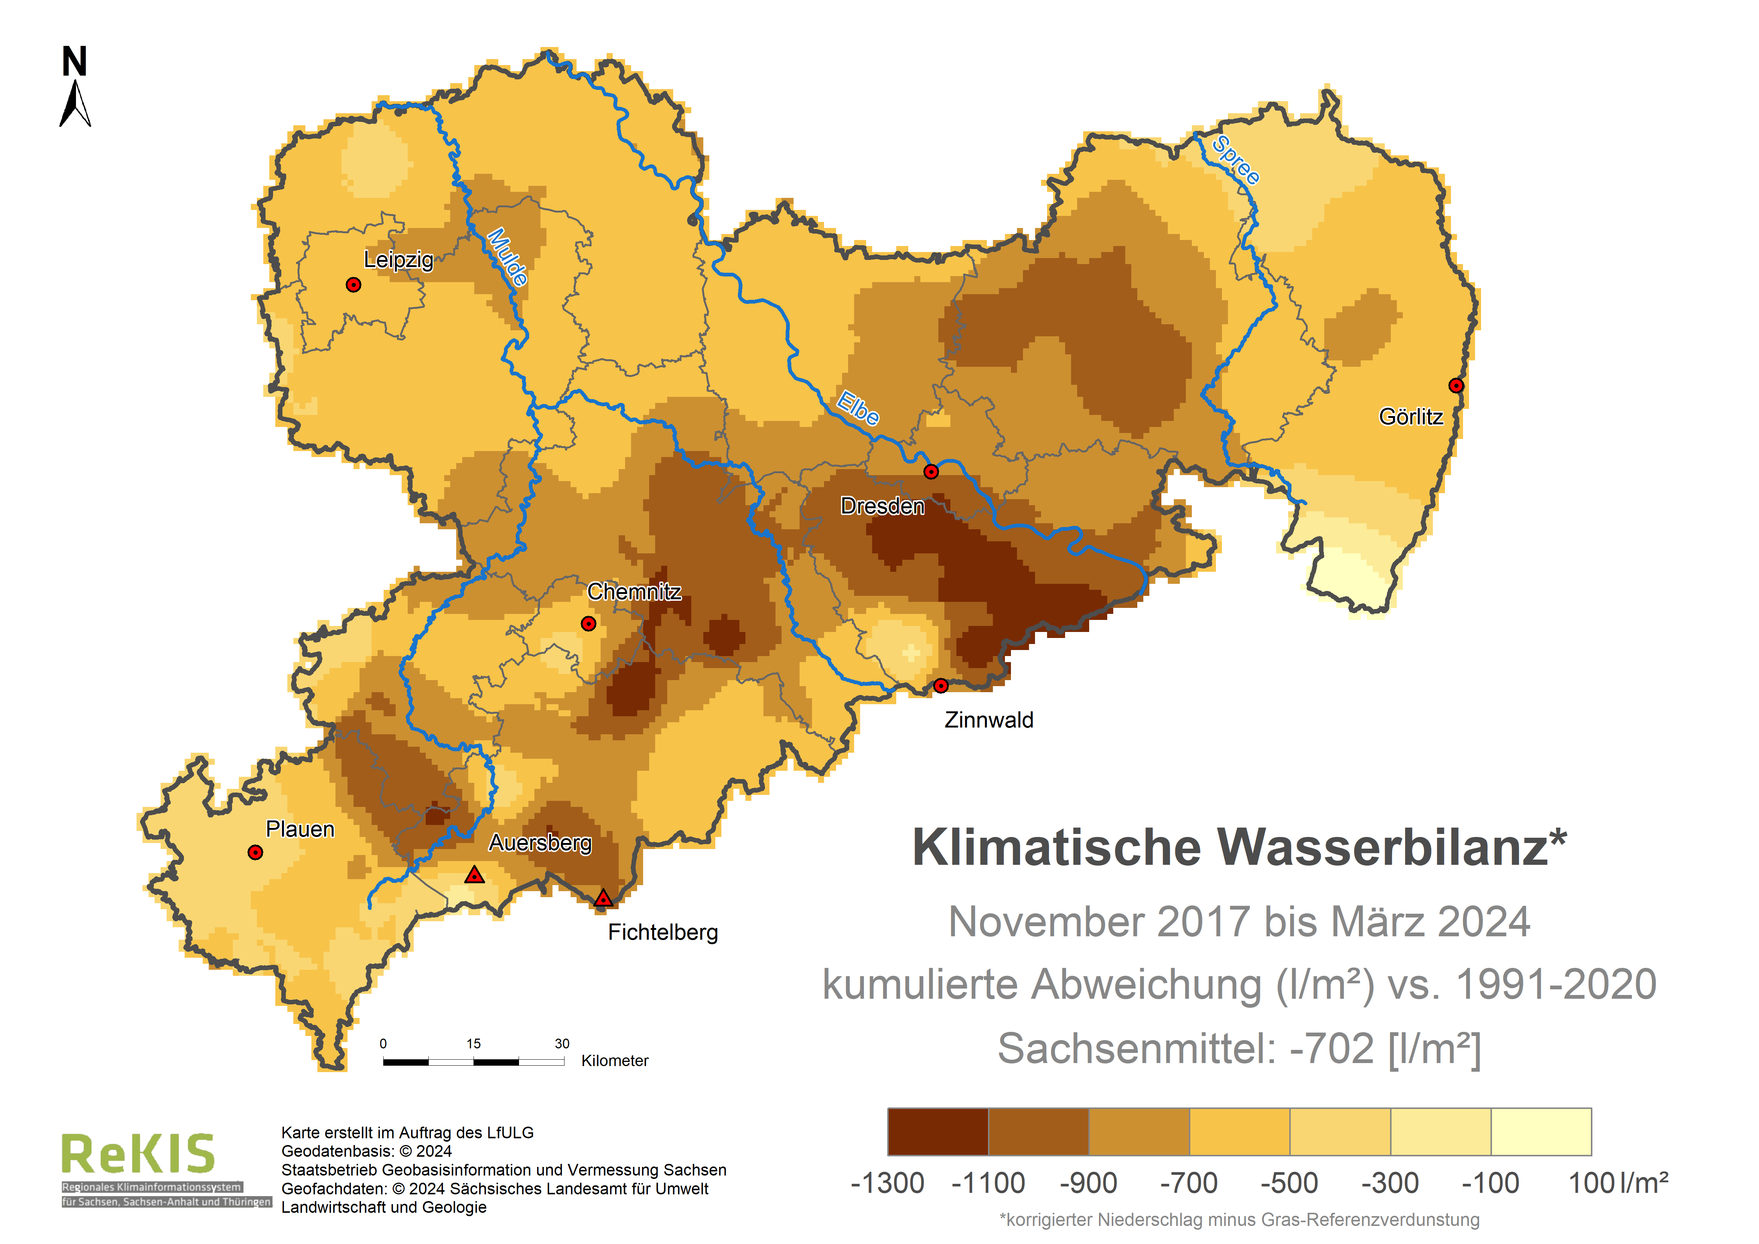 Karte Sachsen mit Darstellung der Klimatischen Wasserbilanz im Vergleich zum Referenzzeitraum 1991 bis 2020